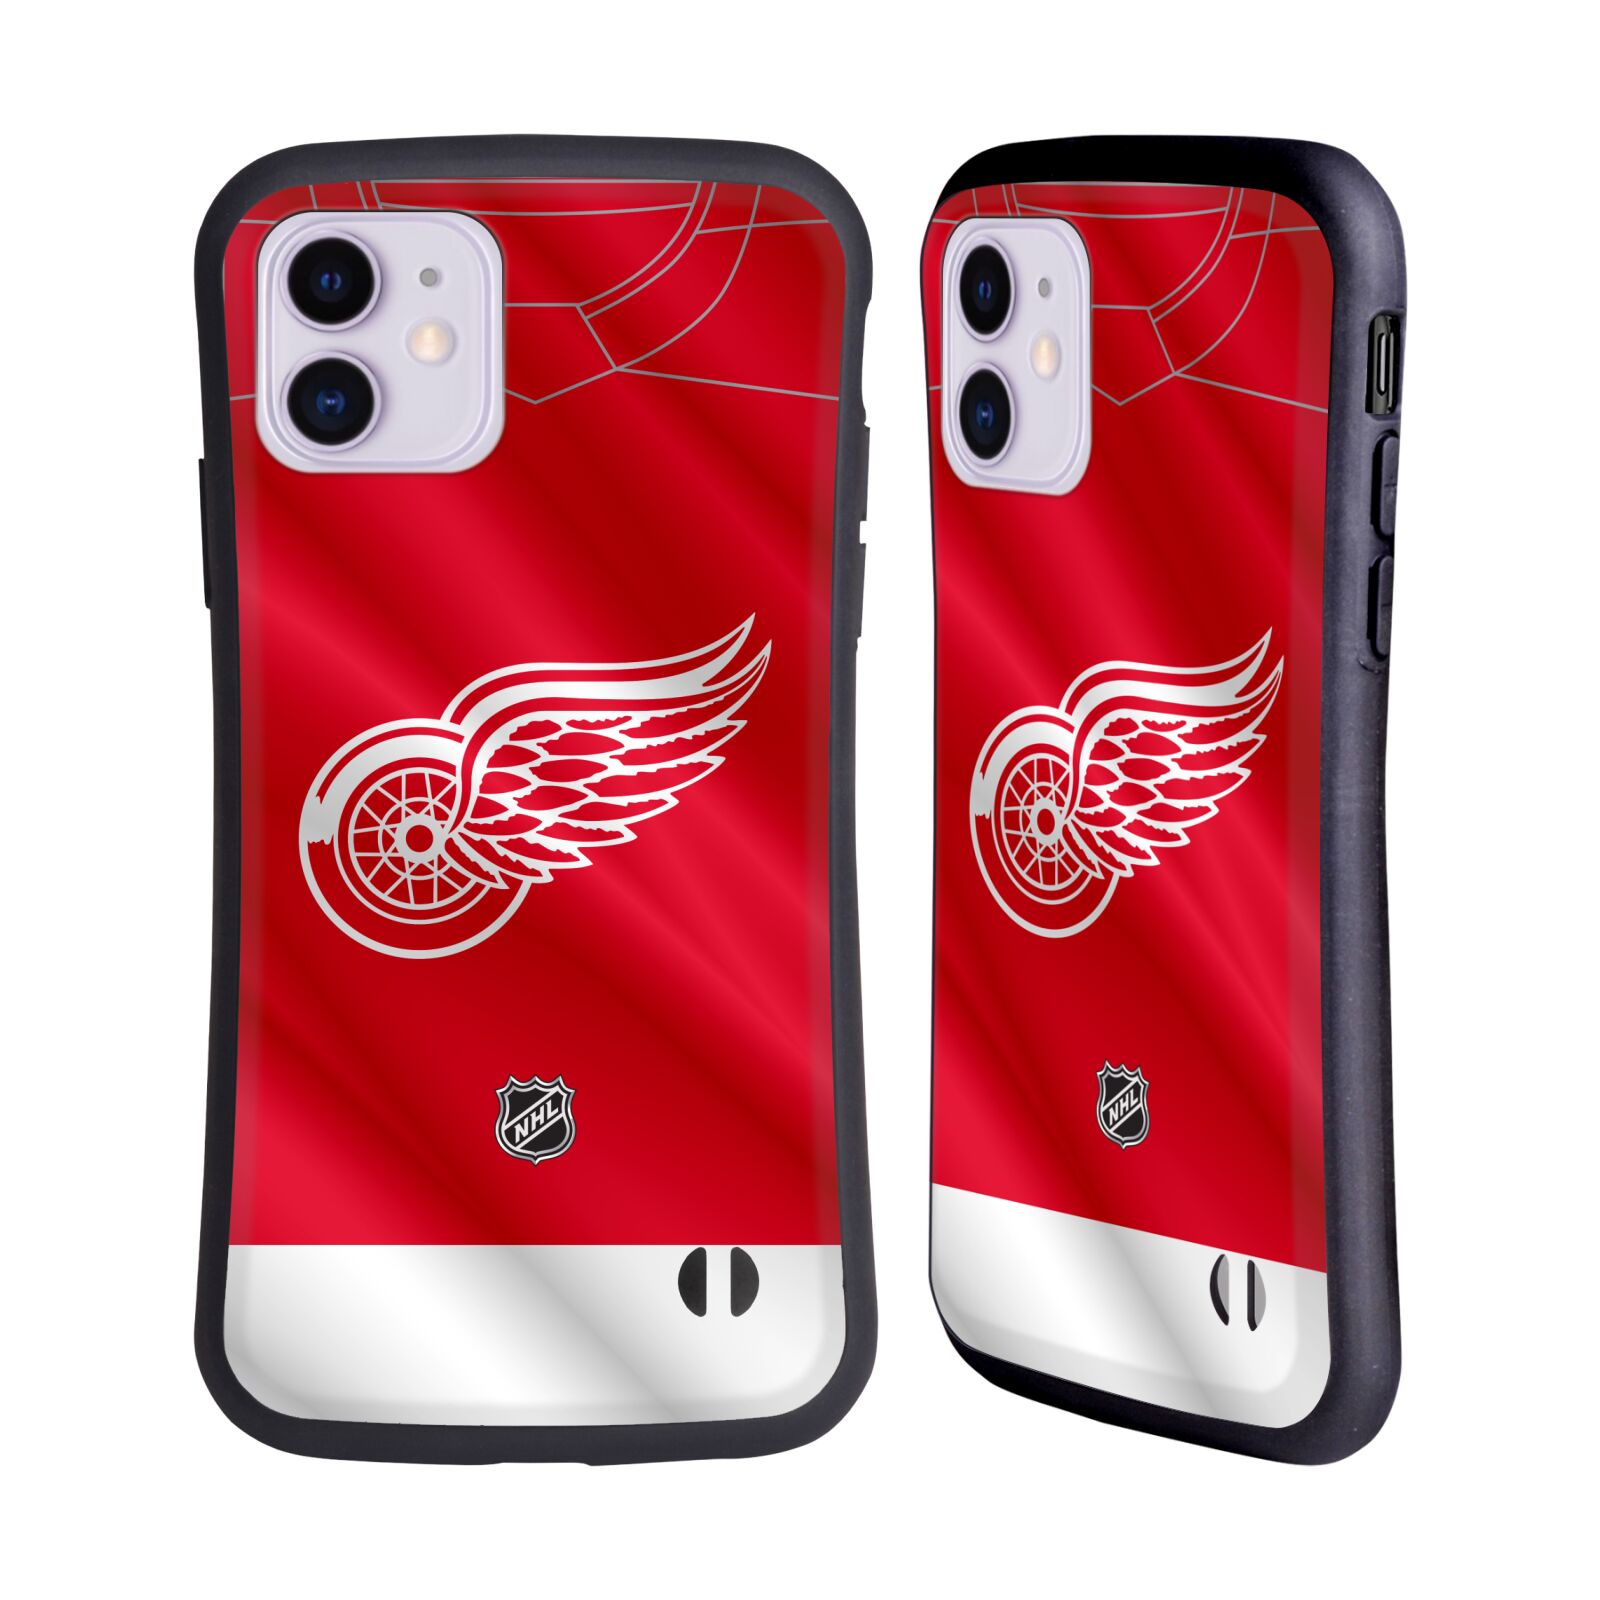 Obal na mobil Apple iPhone 11 - HEAD CASE - NHL - Detroit Red Wings znak na dresu